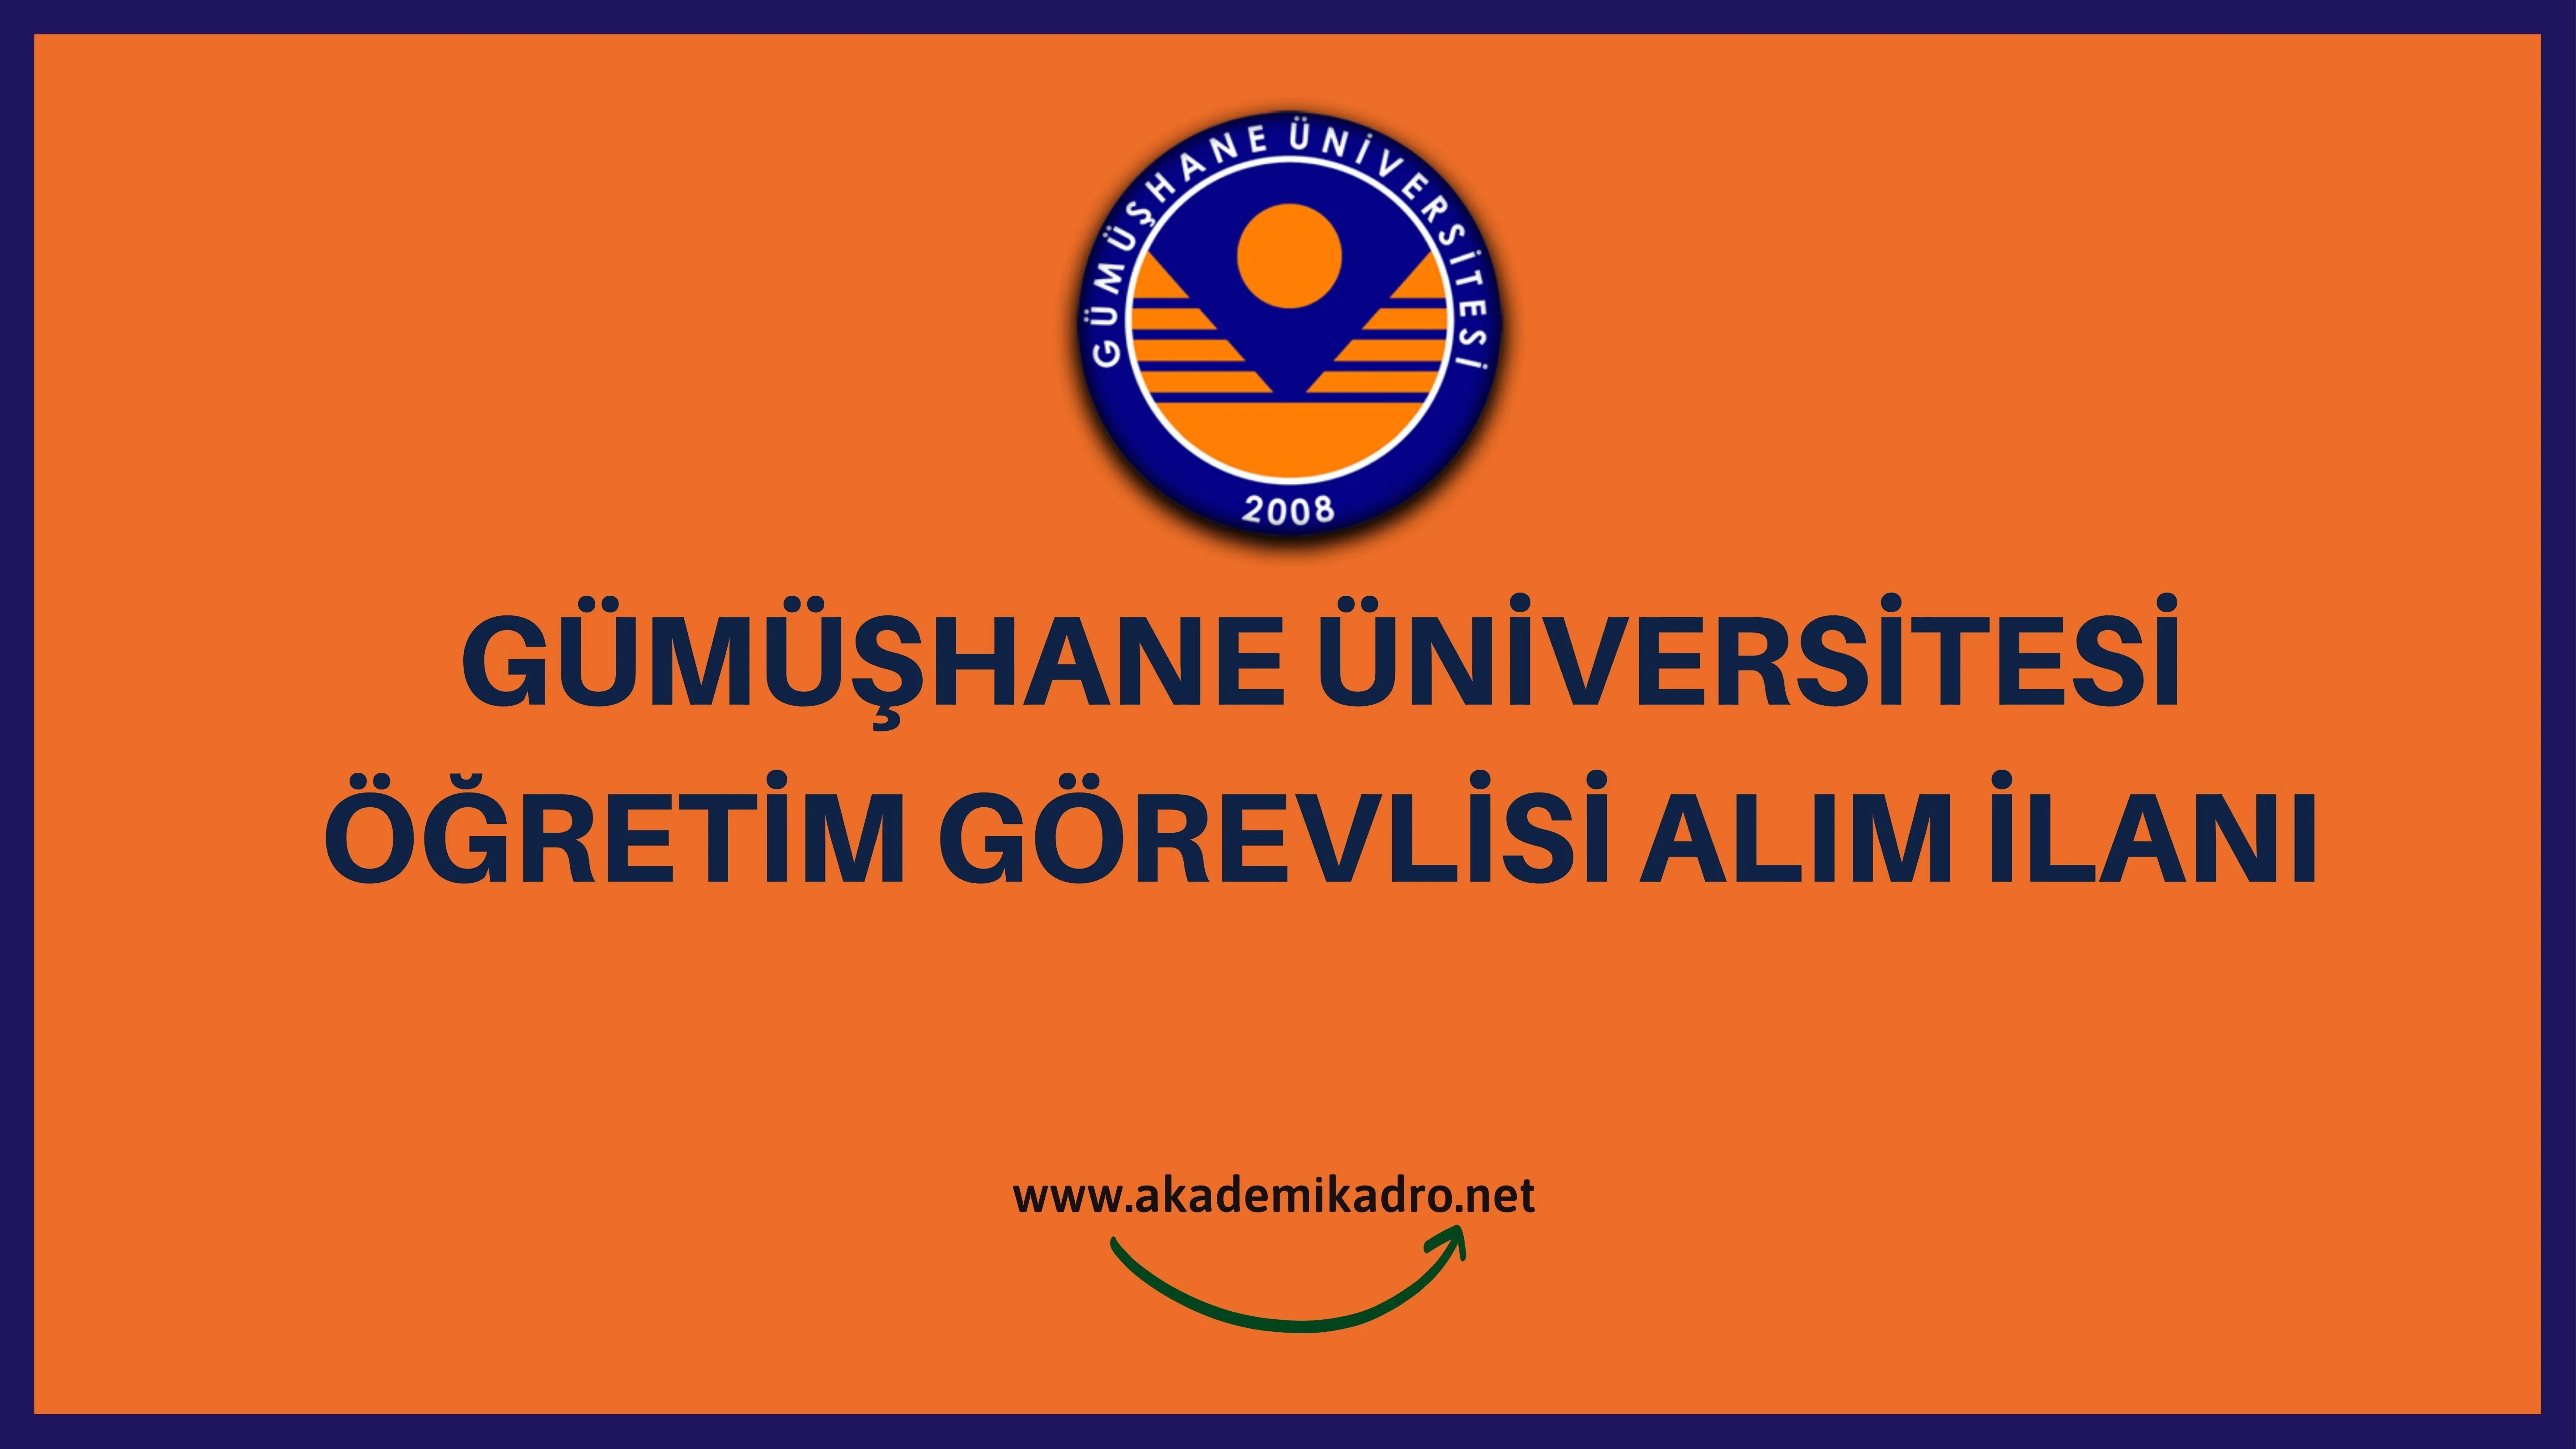 Gümüşhane Üniversitesi 5 Öğretim görevlisi alacak, son başvuru tarihi 29 mayıs 2023.